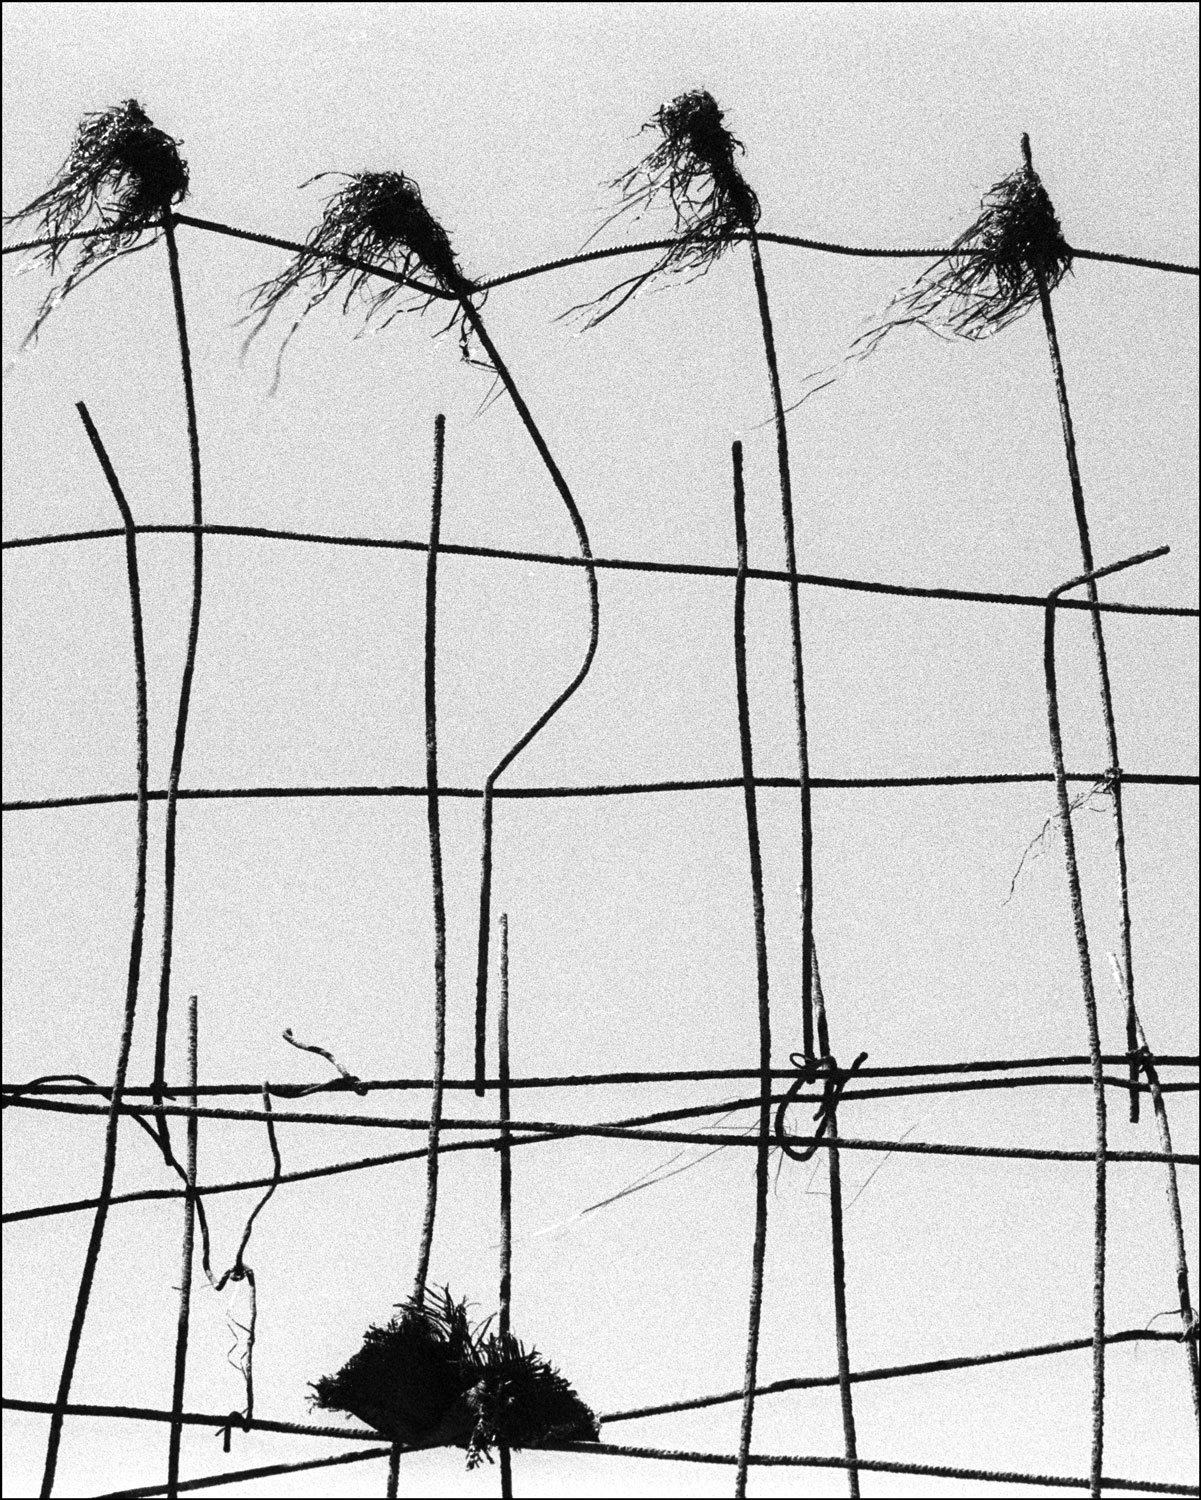 Schwarz-Weiß-Fotografie: Drahtzaum vor grauem Hintergrund, analog fotografiert